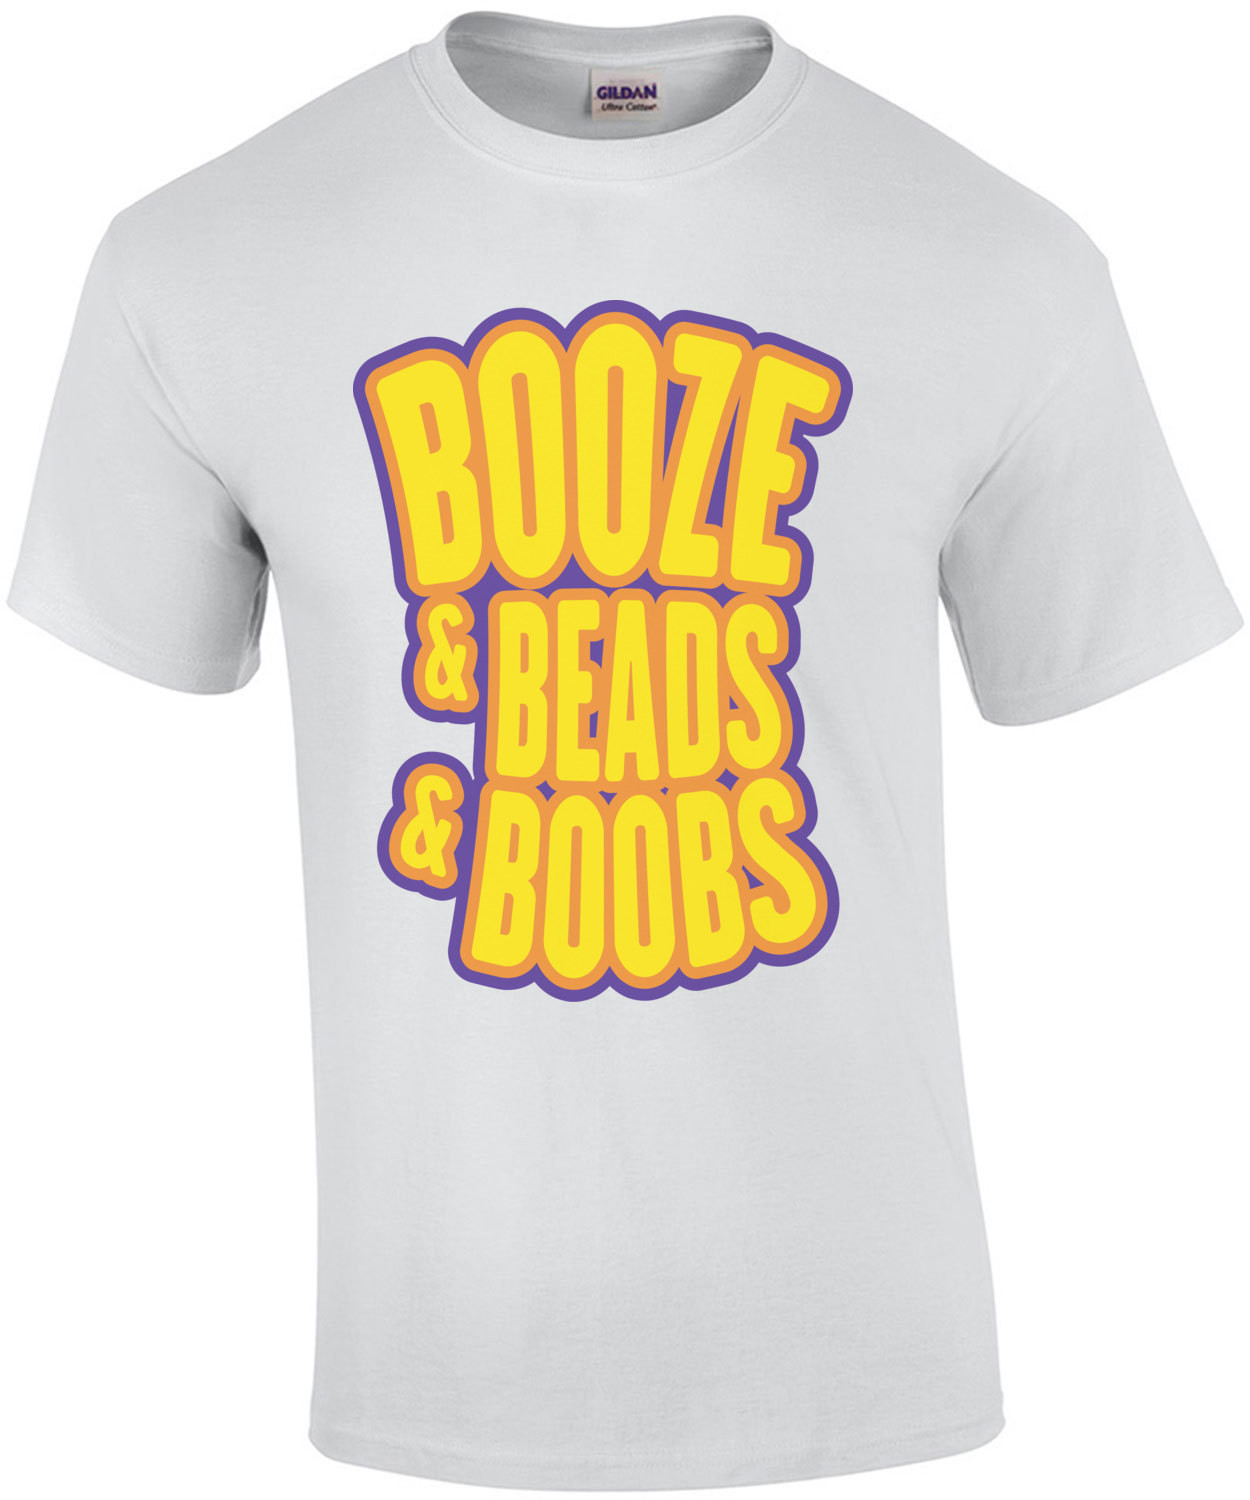 Booze & Beads & Boobs - mardi gras t-shirt new orleans Beads and Bling - mardi gras - New Orleans - louisiana t-shirt 